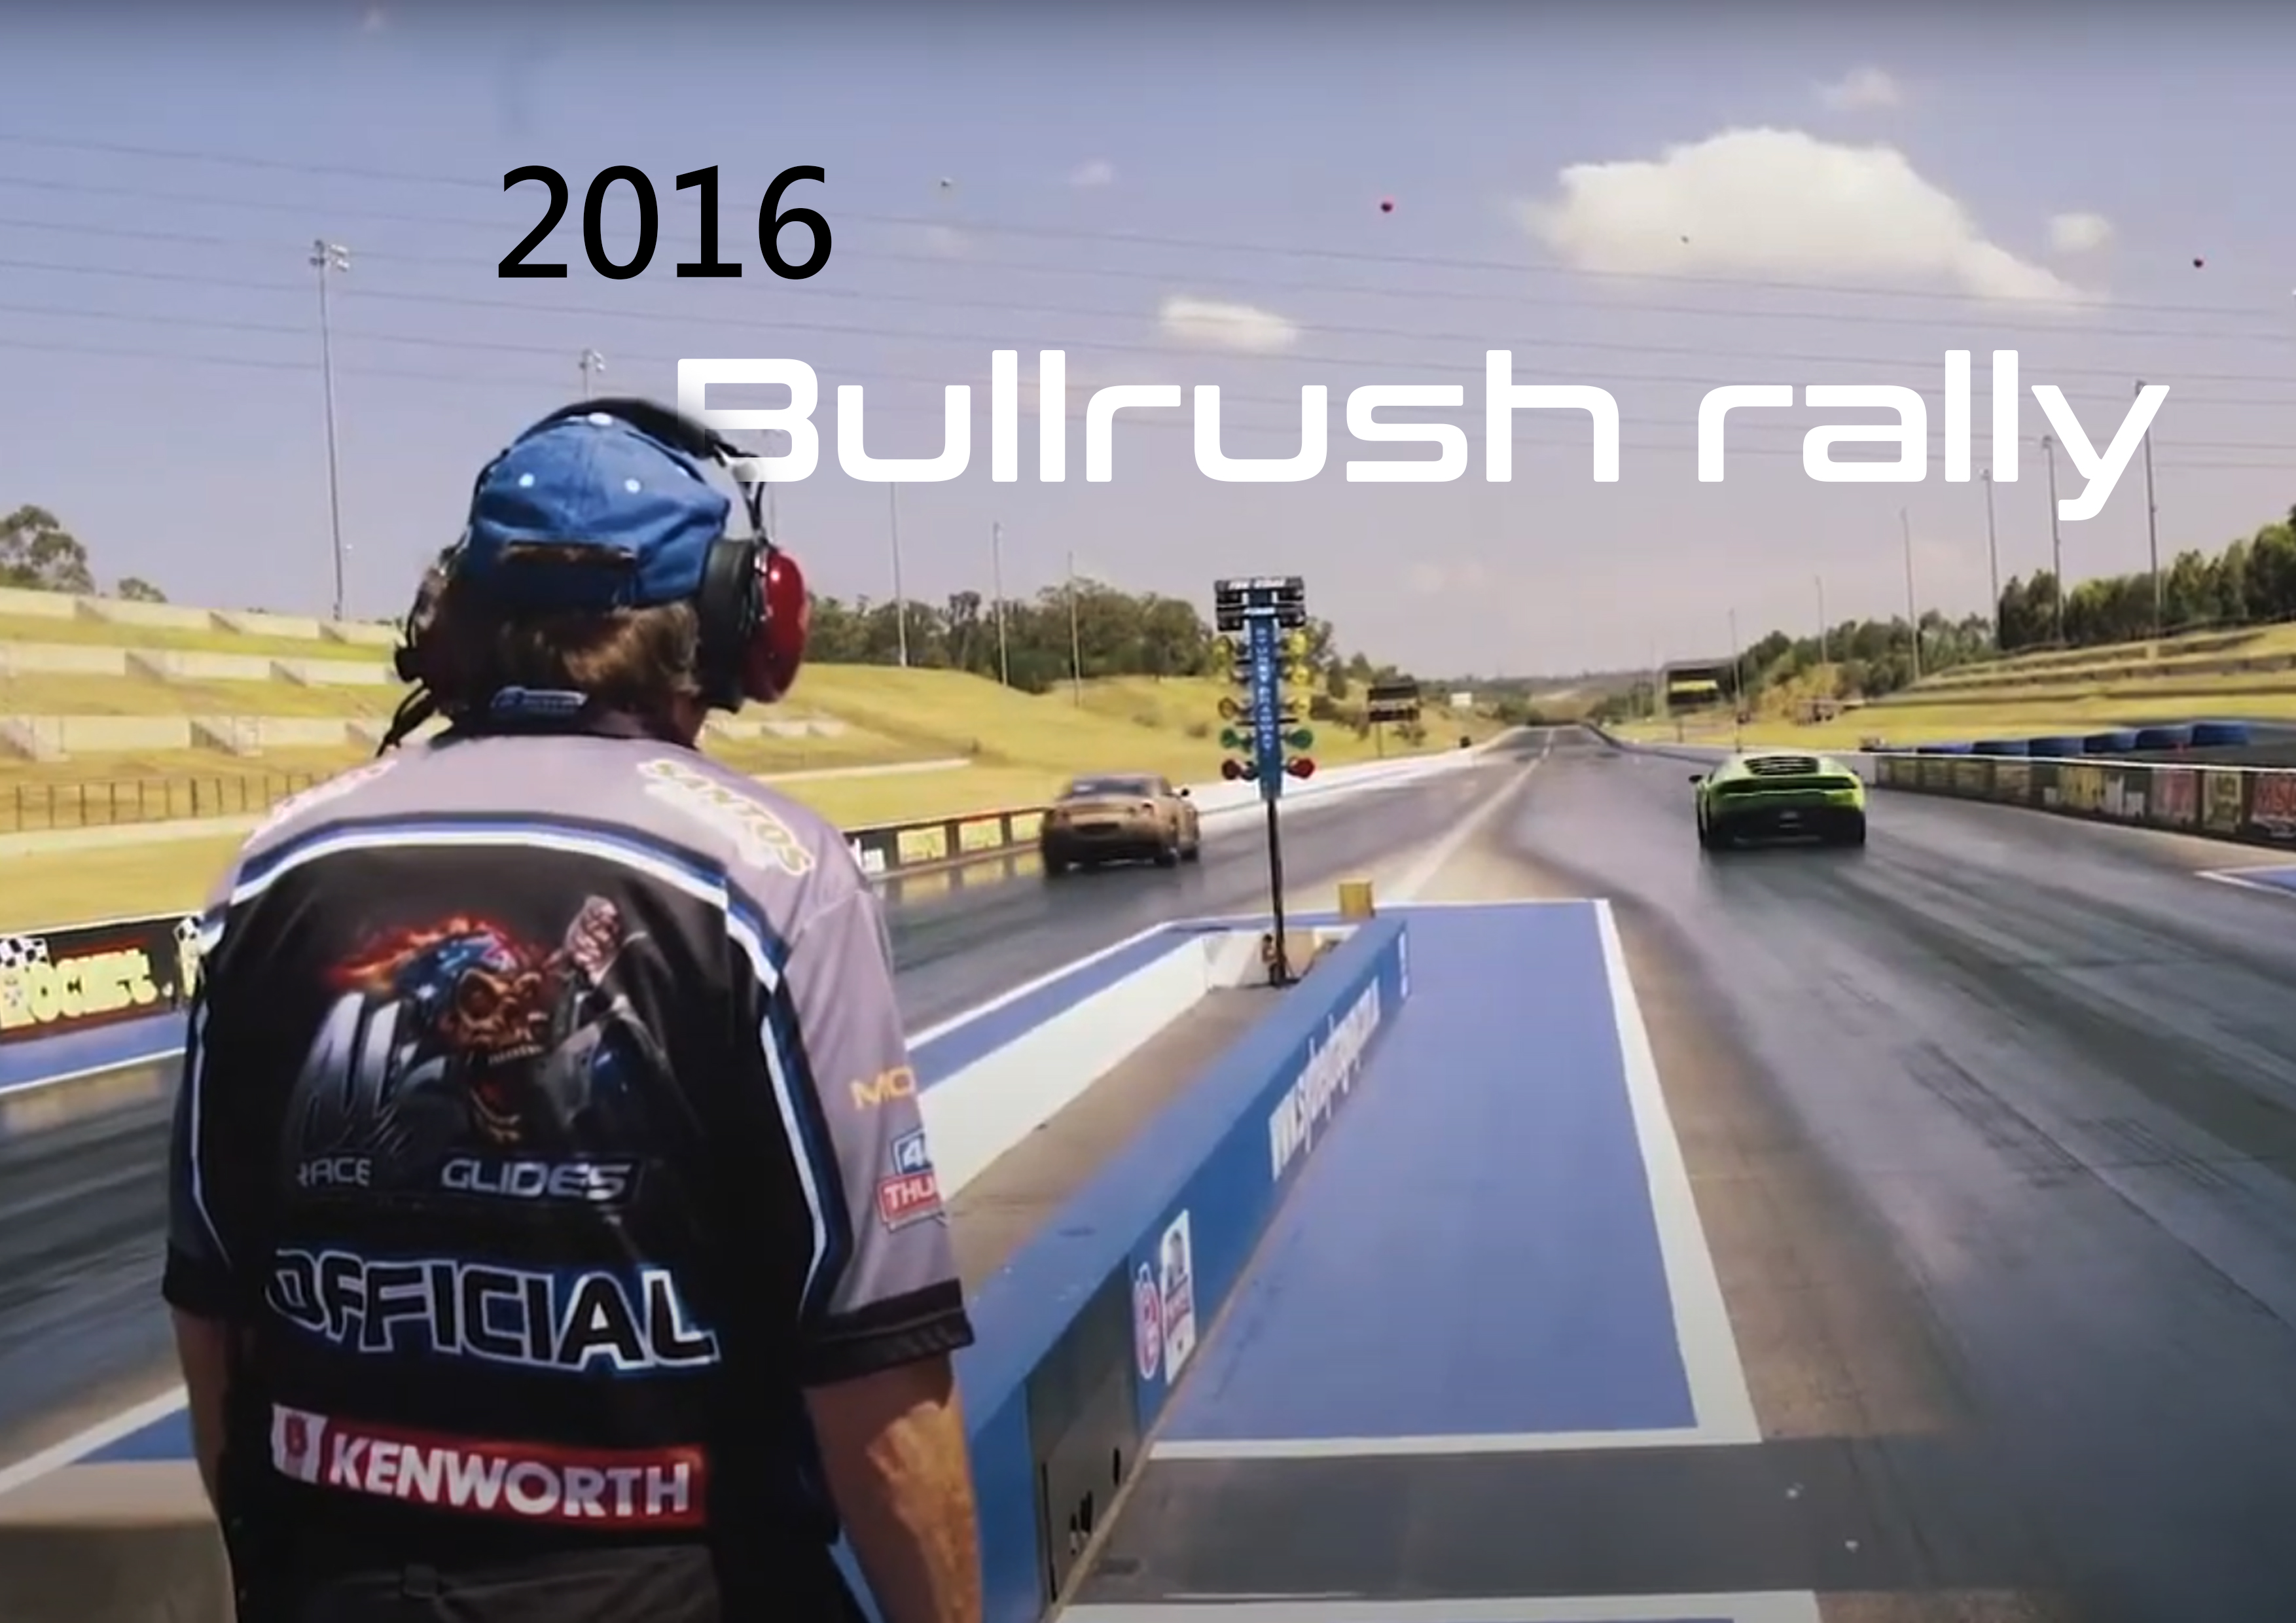 Bull rush rally 2016